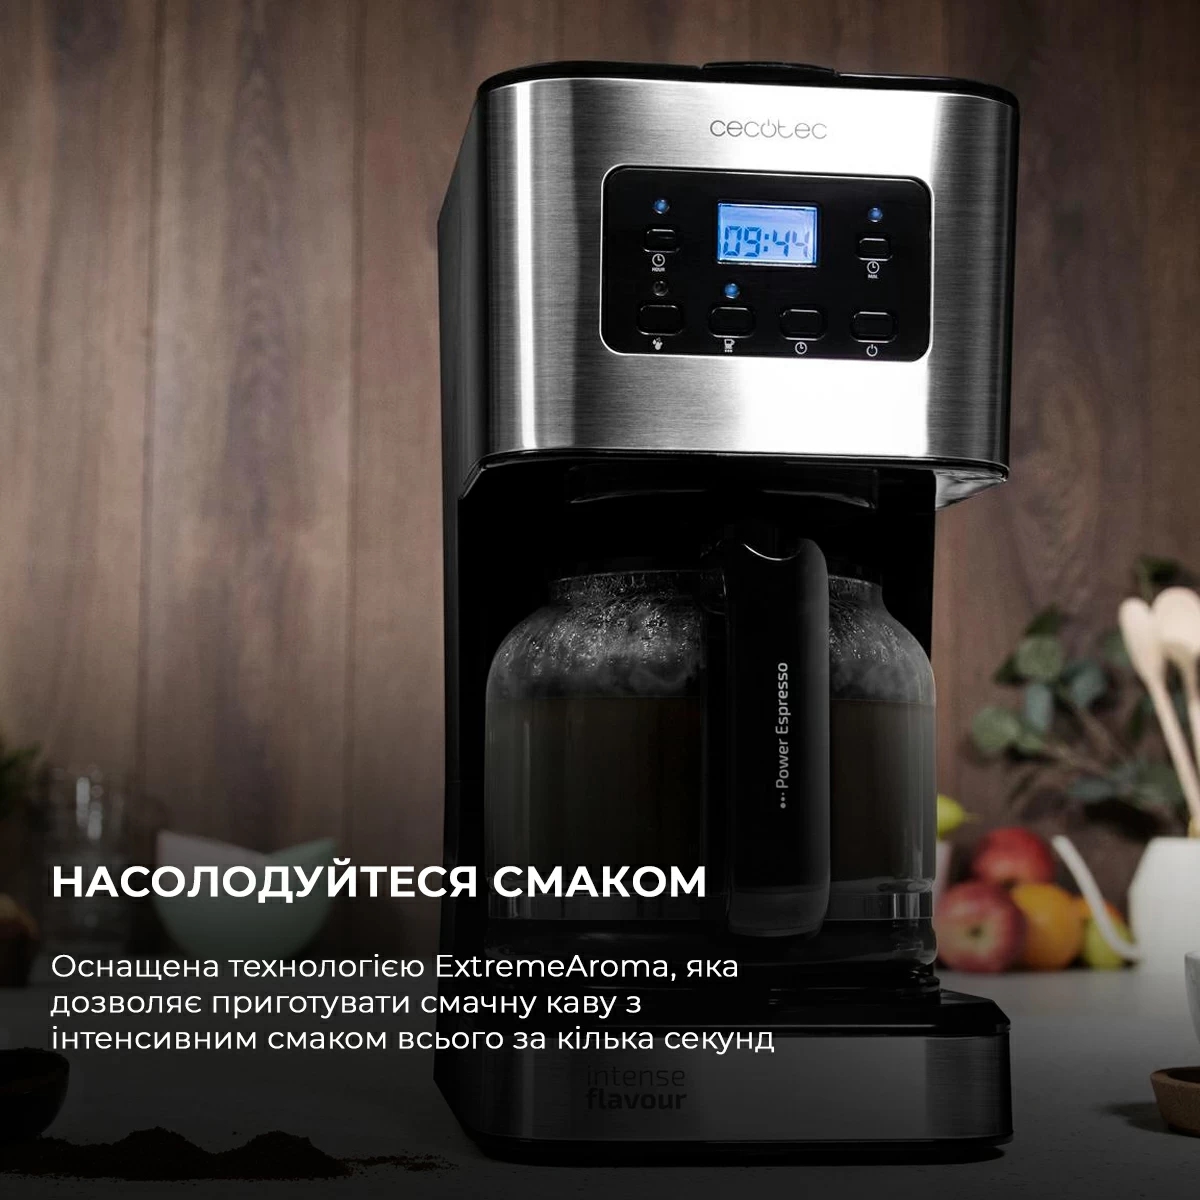 продаём Cecotec Coffee 66 Smart CCTC-01555 (8435484015554) в Украине - фото 4